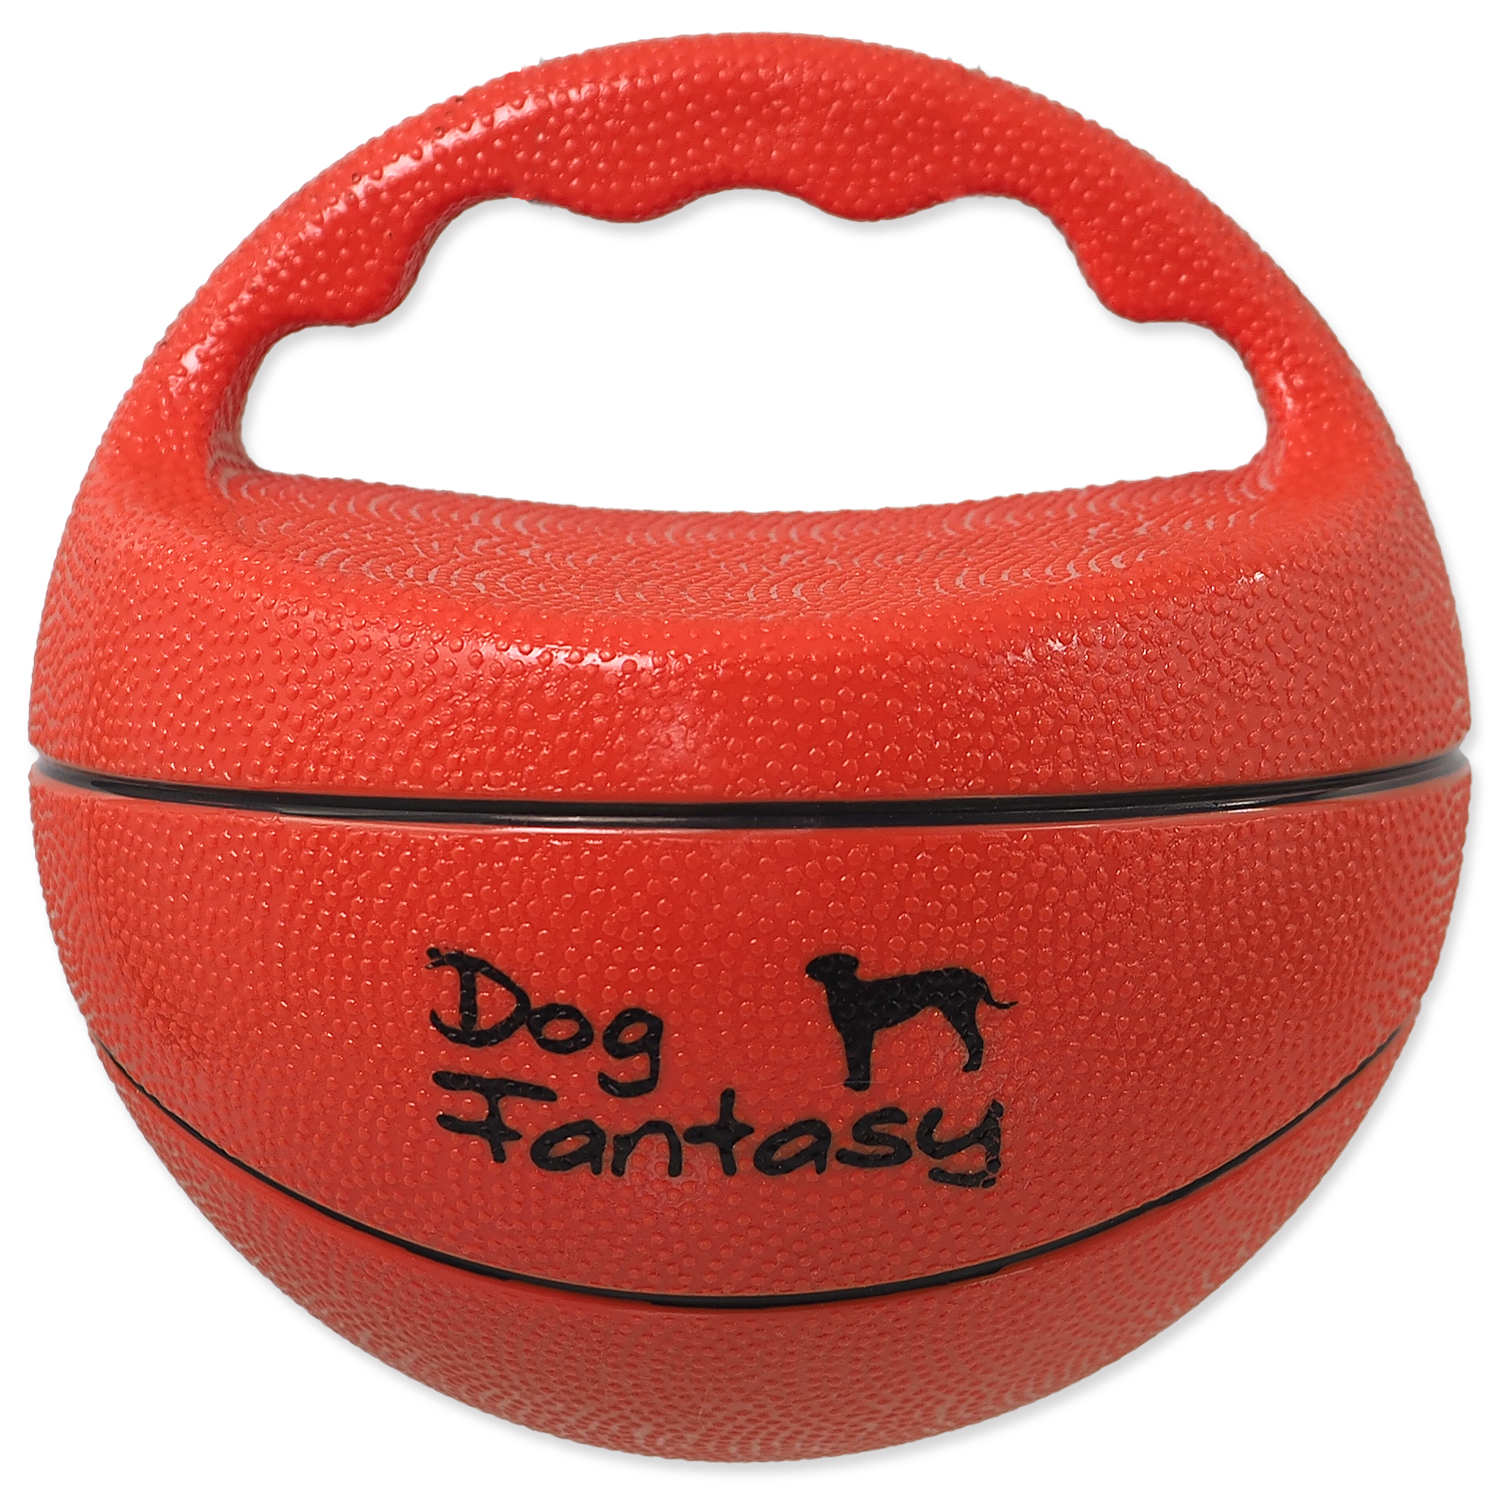 Hračka DOG FANTASY Ball míč s rukojetí pískací, 15 cm